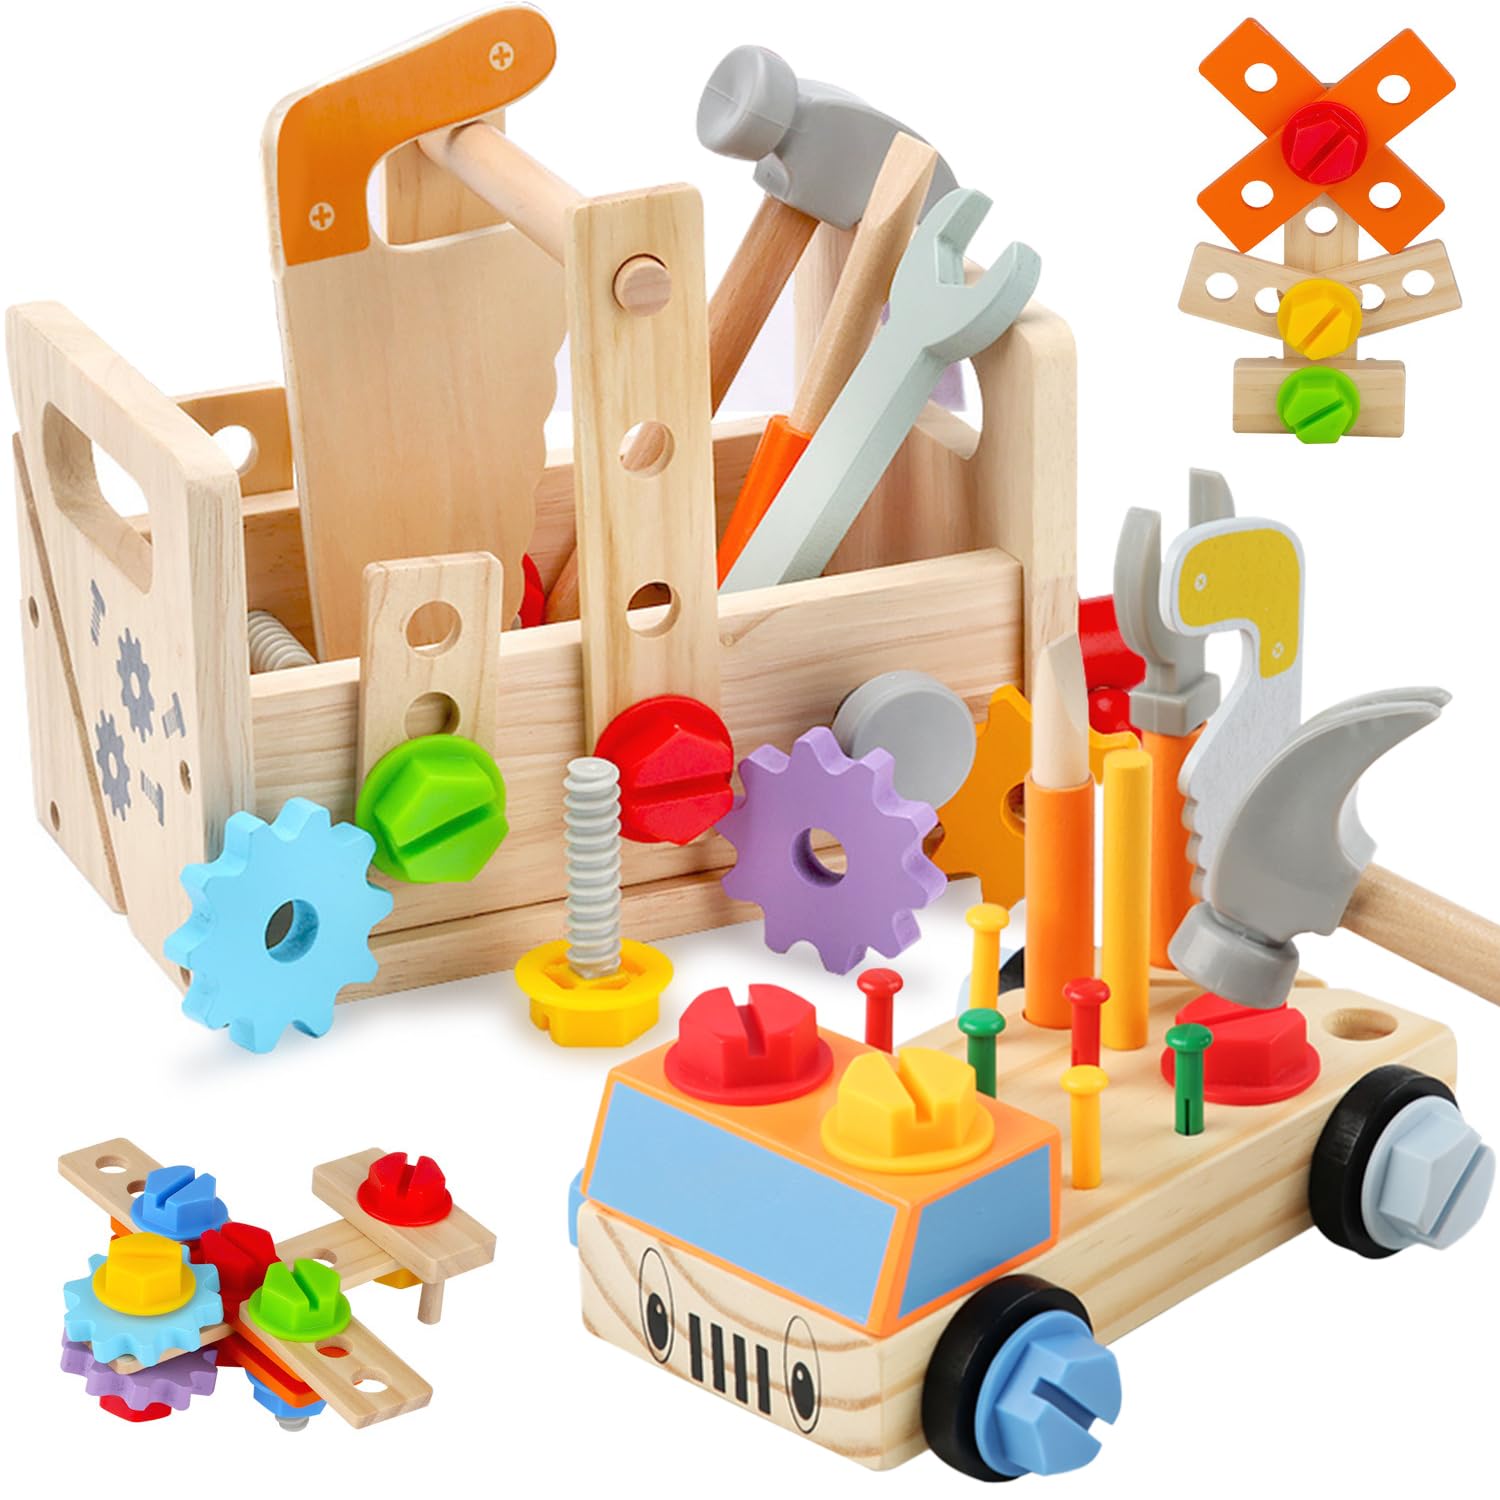 Jecimco 大工さん おもちゃ 木製 2in1 子供 知育玩具 DIY 組み立て おもちゃ セット 男の子 女の子 工具セット ままごと ごっこ遊